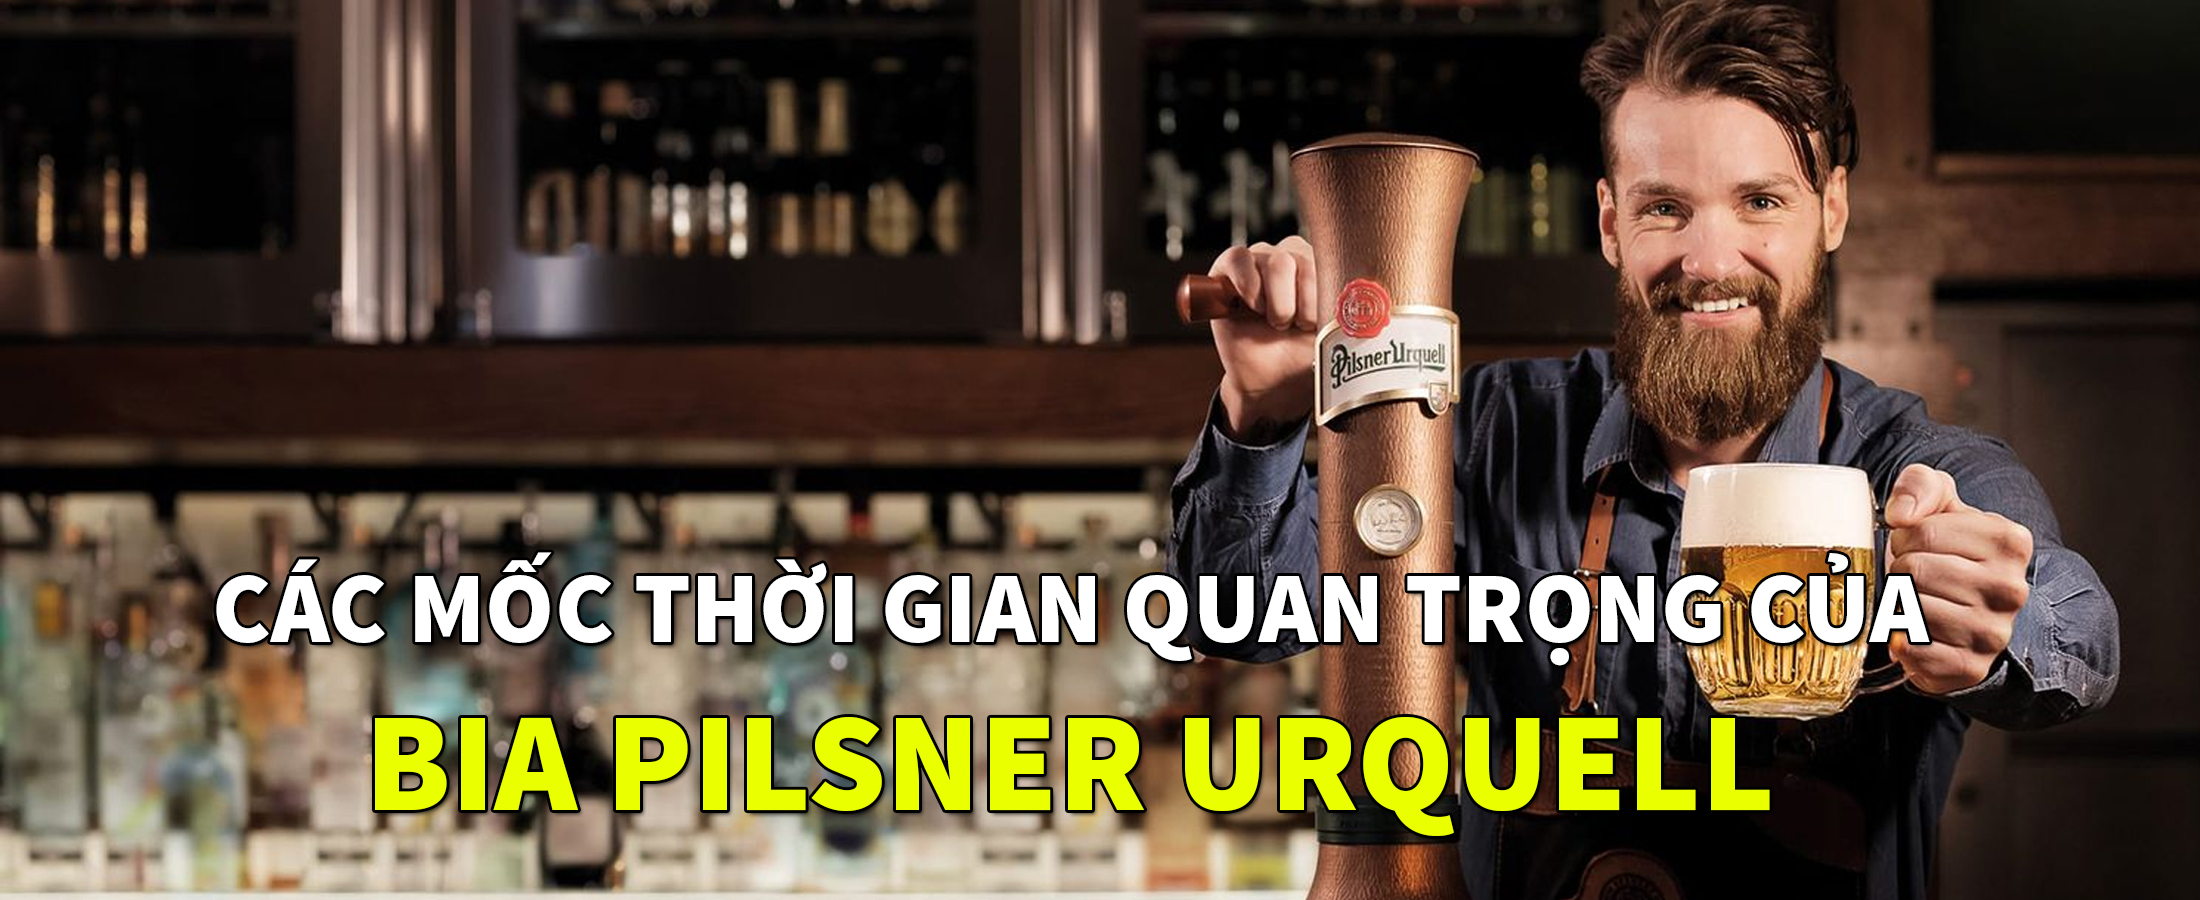 Các mốc thời gian quan trọng của bia Pilsner Urquell